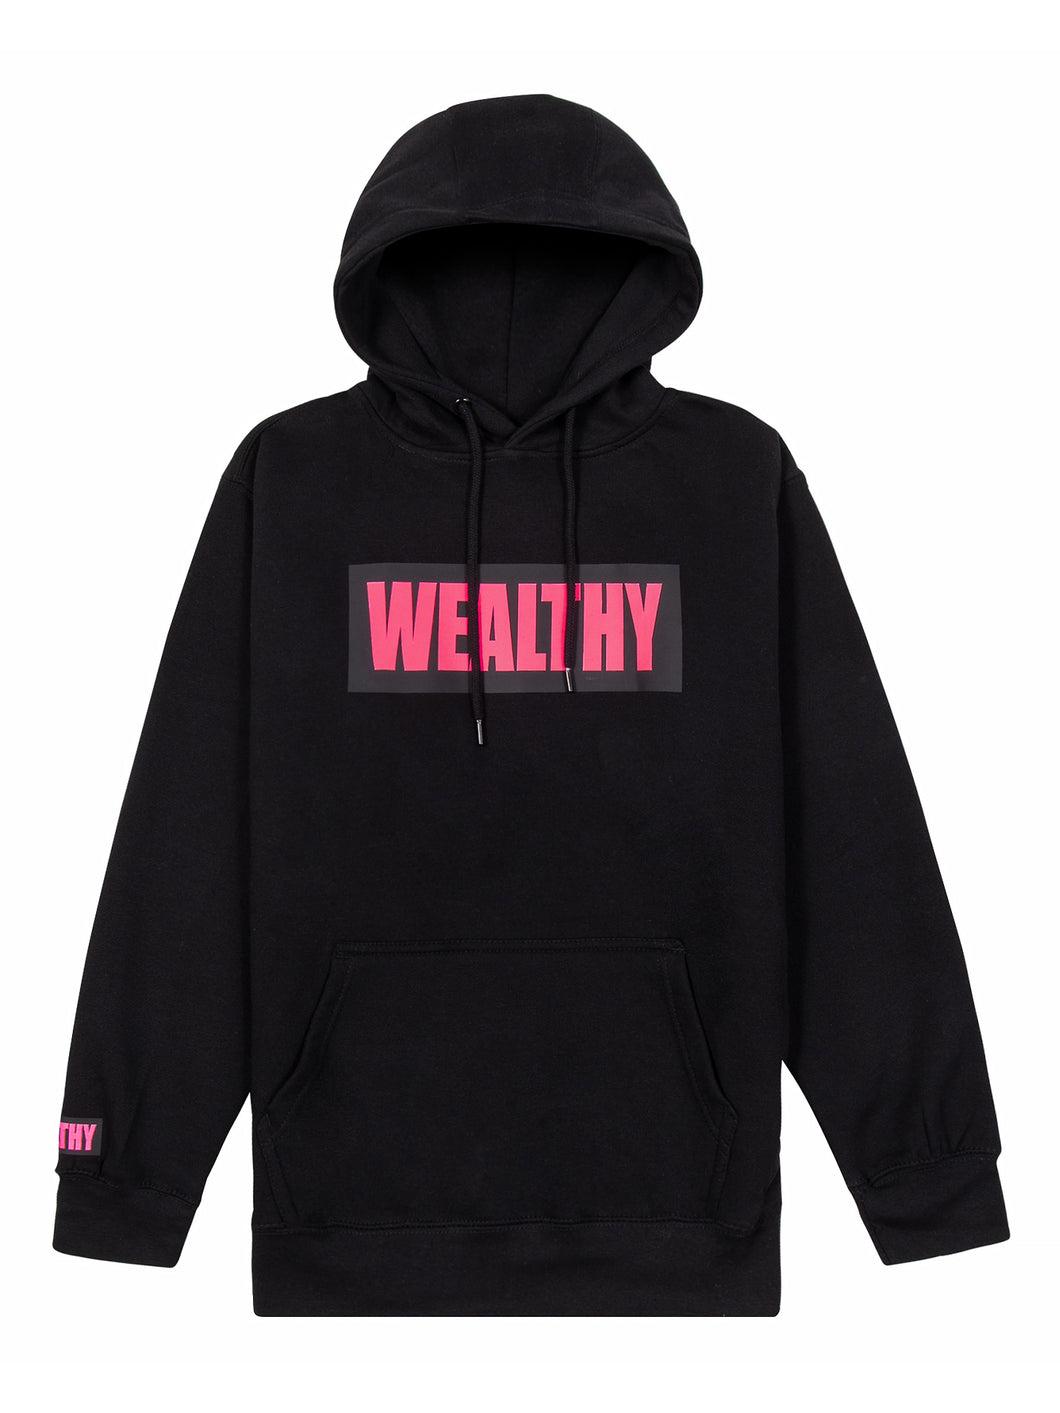 Wealthy Hoodie (Black/Black/Neon Pink)